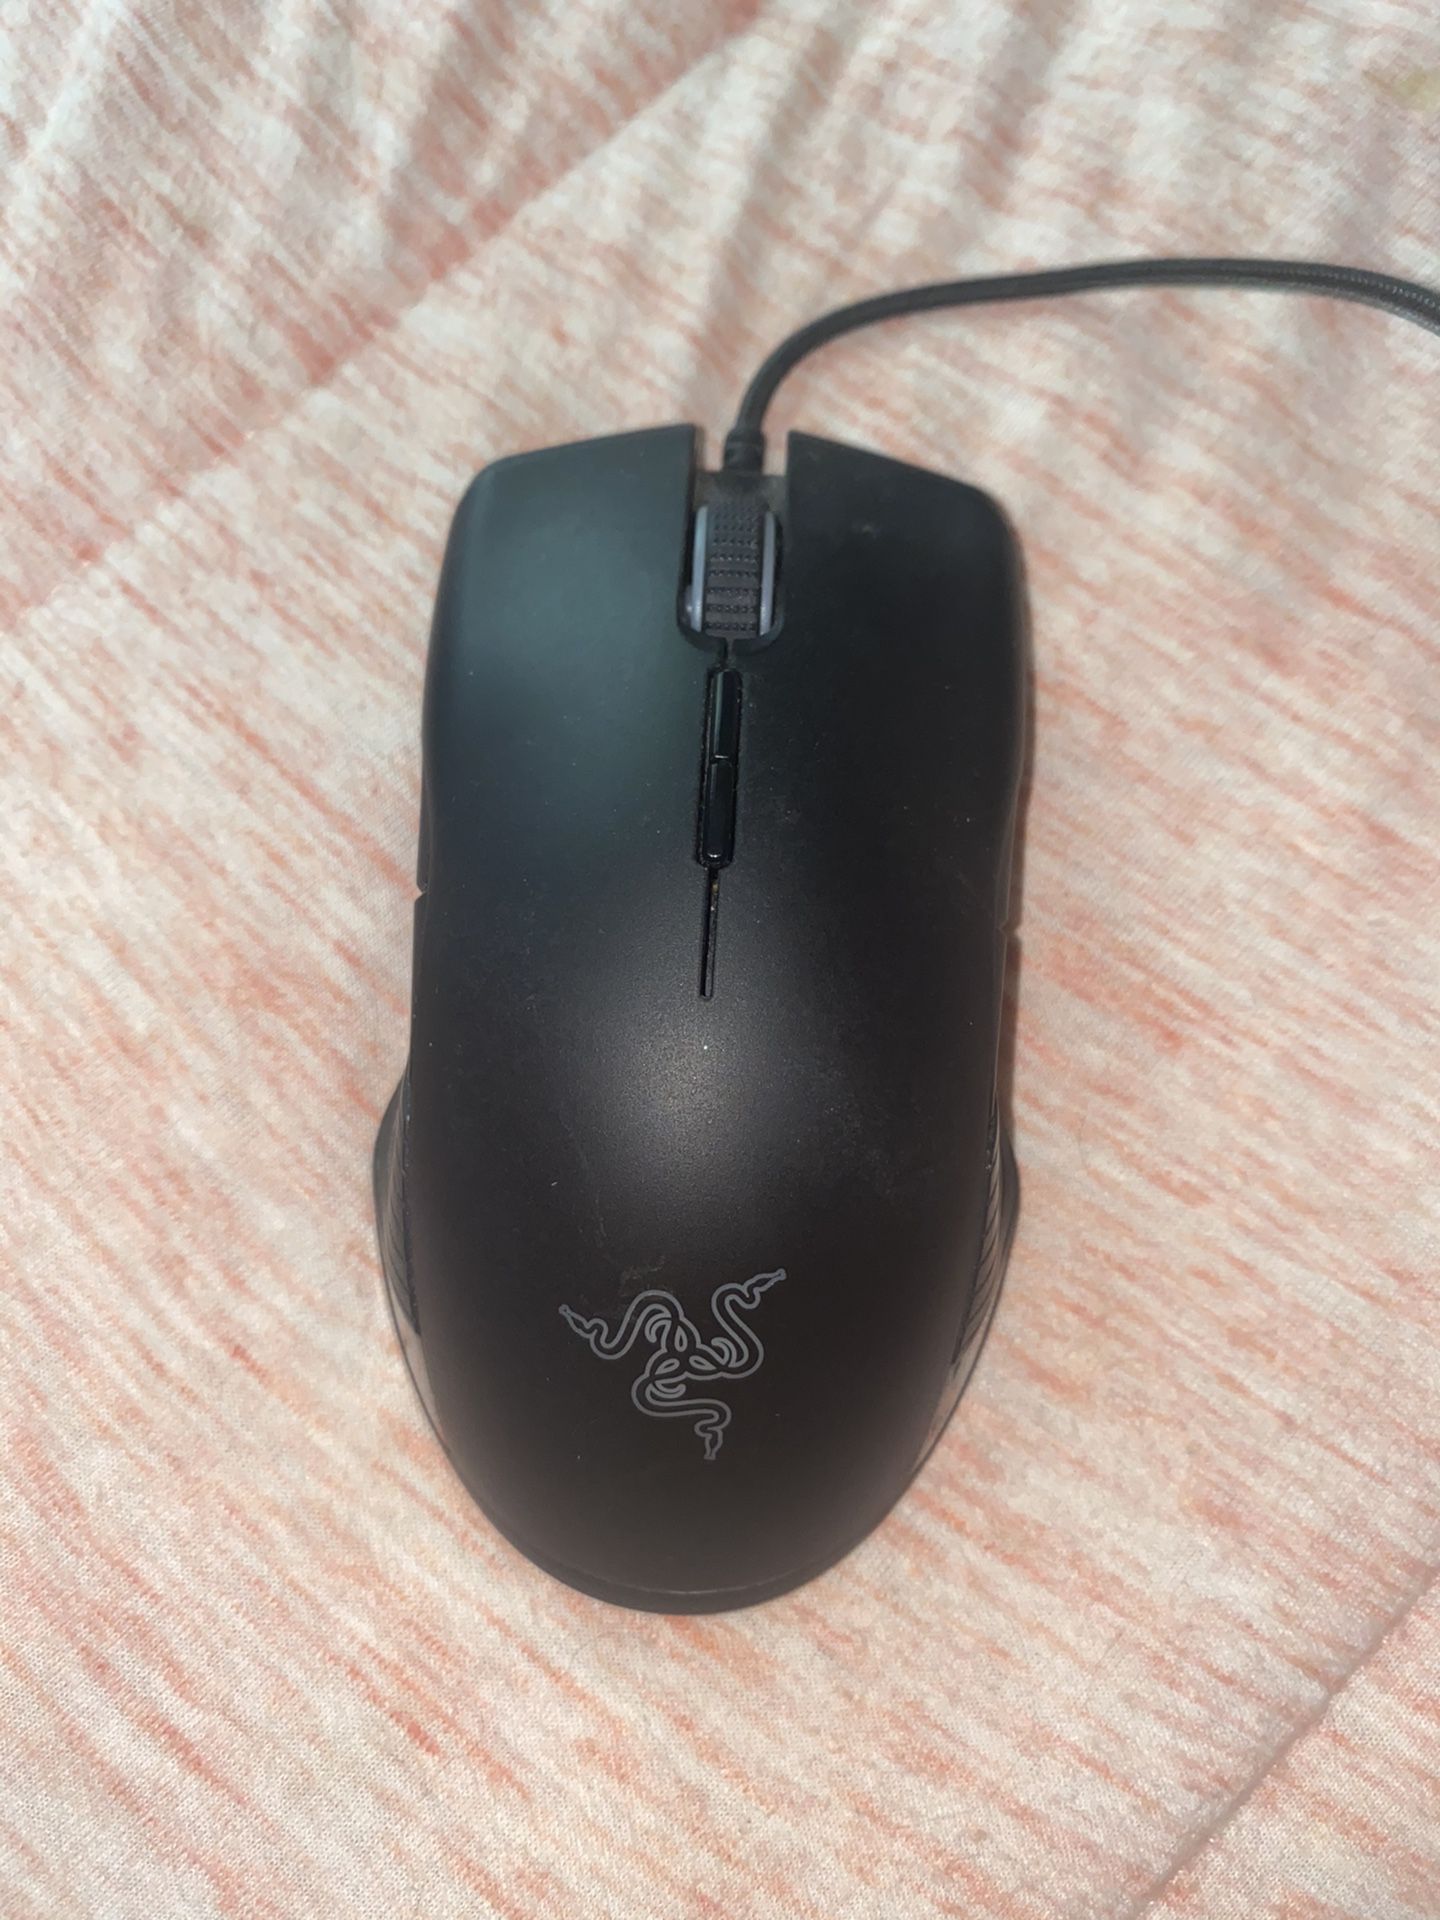 Razer Lancehead Tournament Edition Mouse